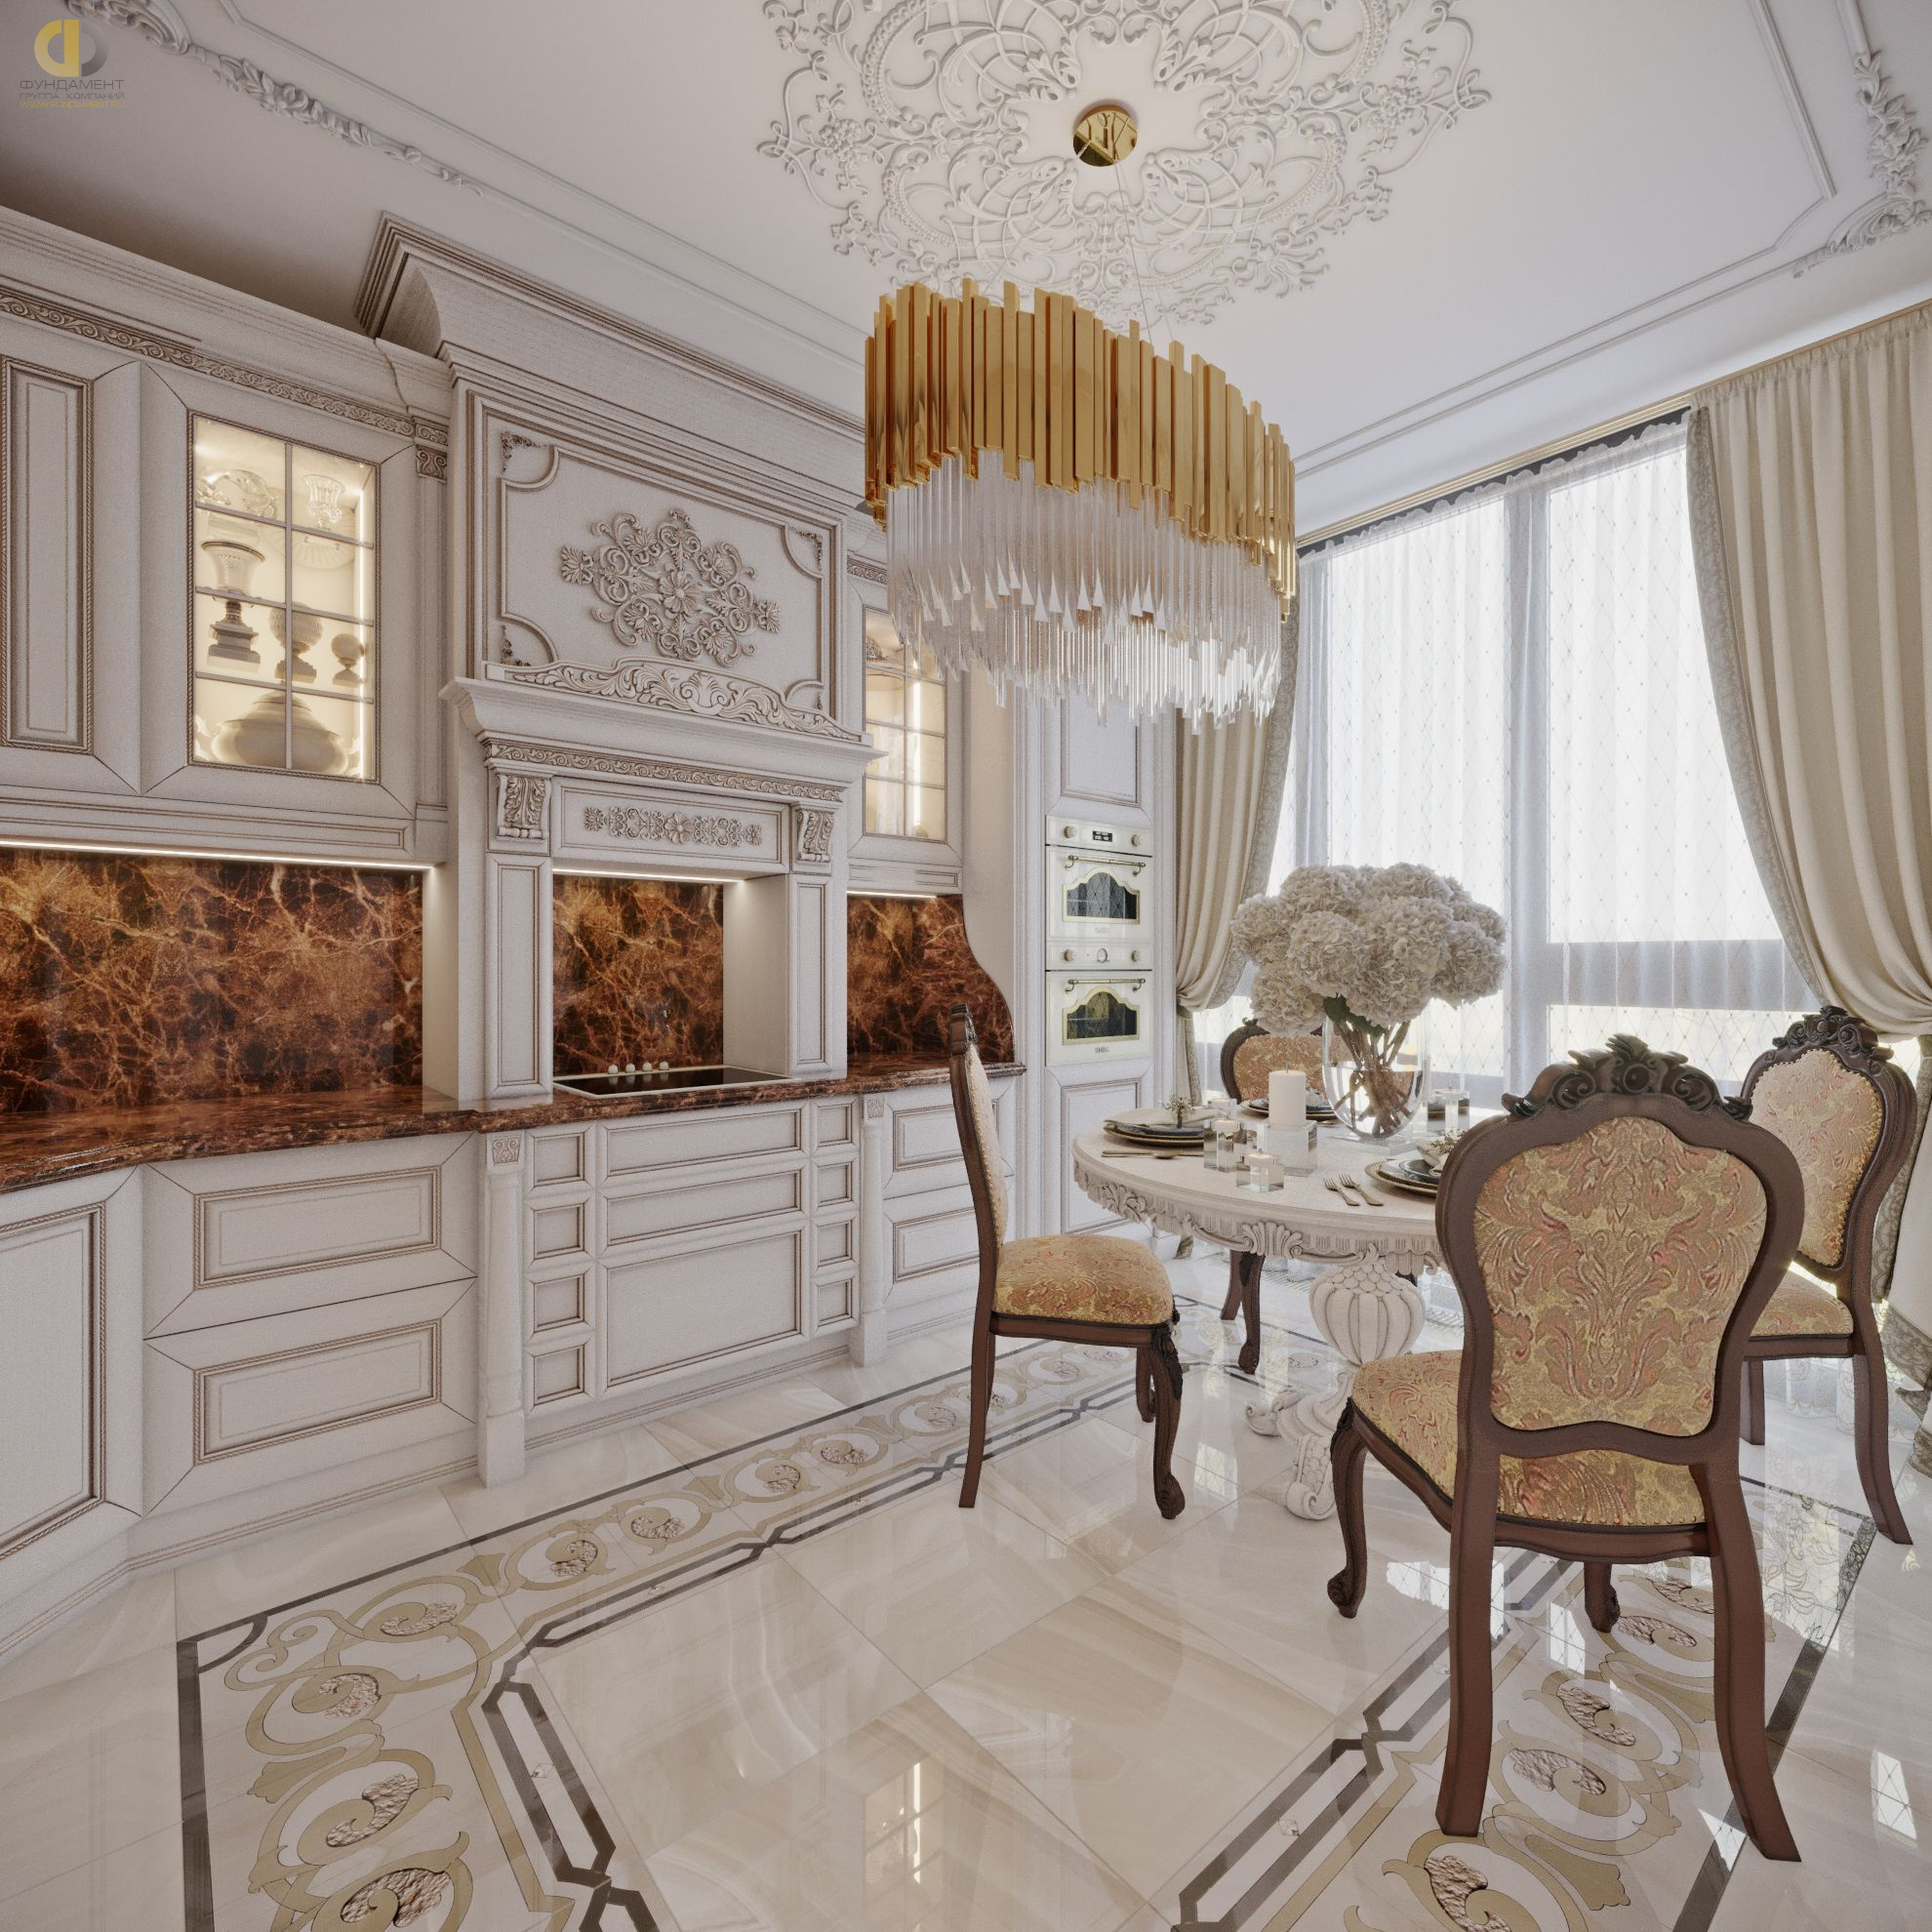 Кухня в стиле дизайна классицизм по адресу г. Москва, Хорошевское шоссе, дом 25А, стр. 1, 2021 года